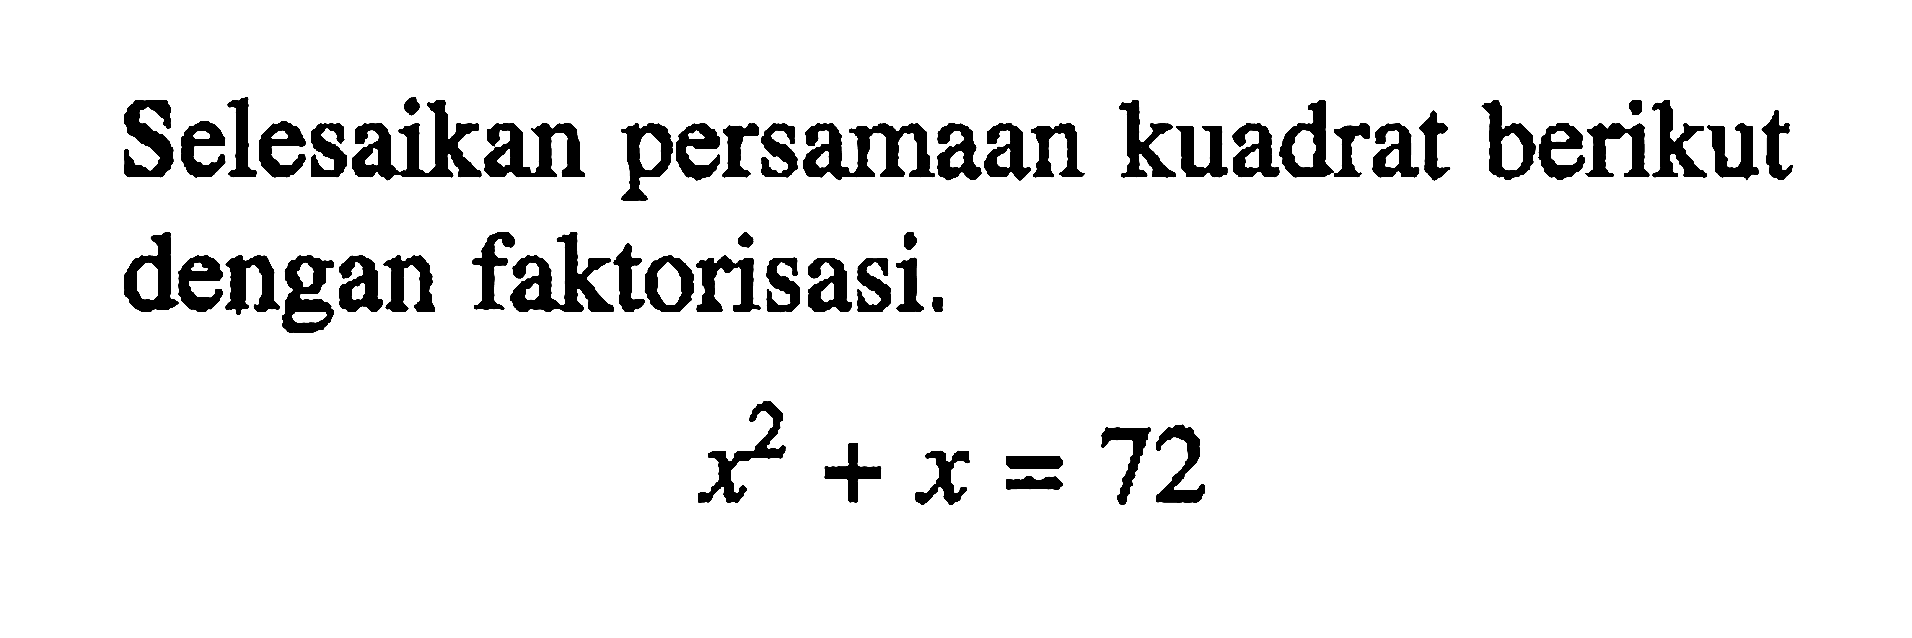 Selesaikan persamaan kuadrat berikut dengan faktorisasi. x^2 + x = 72